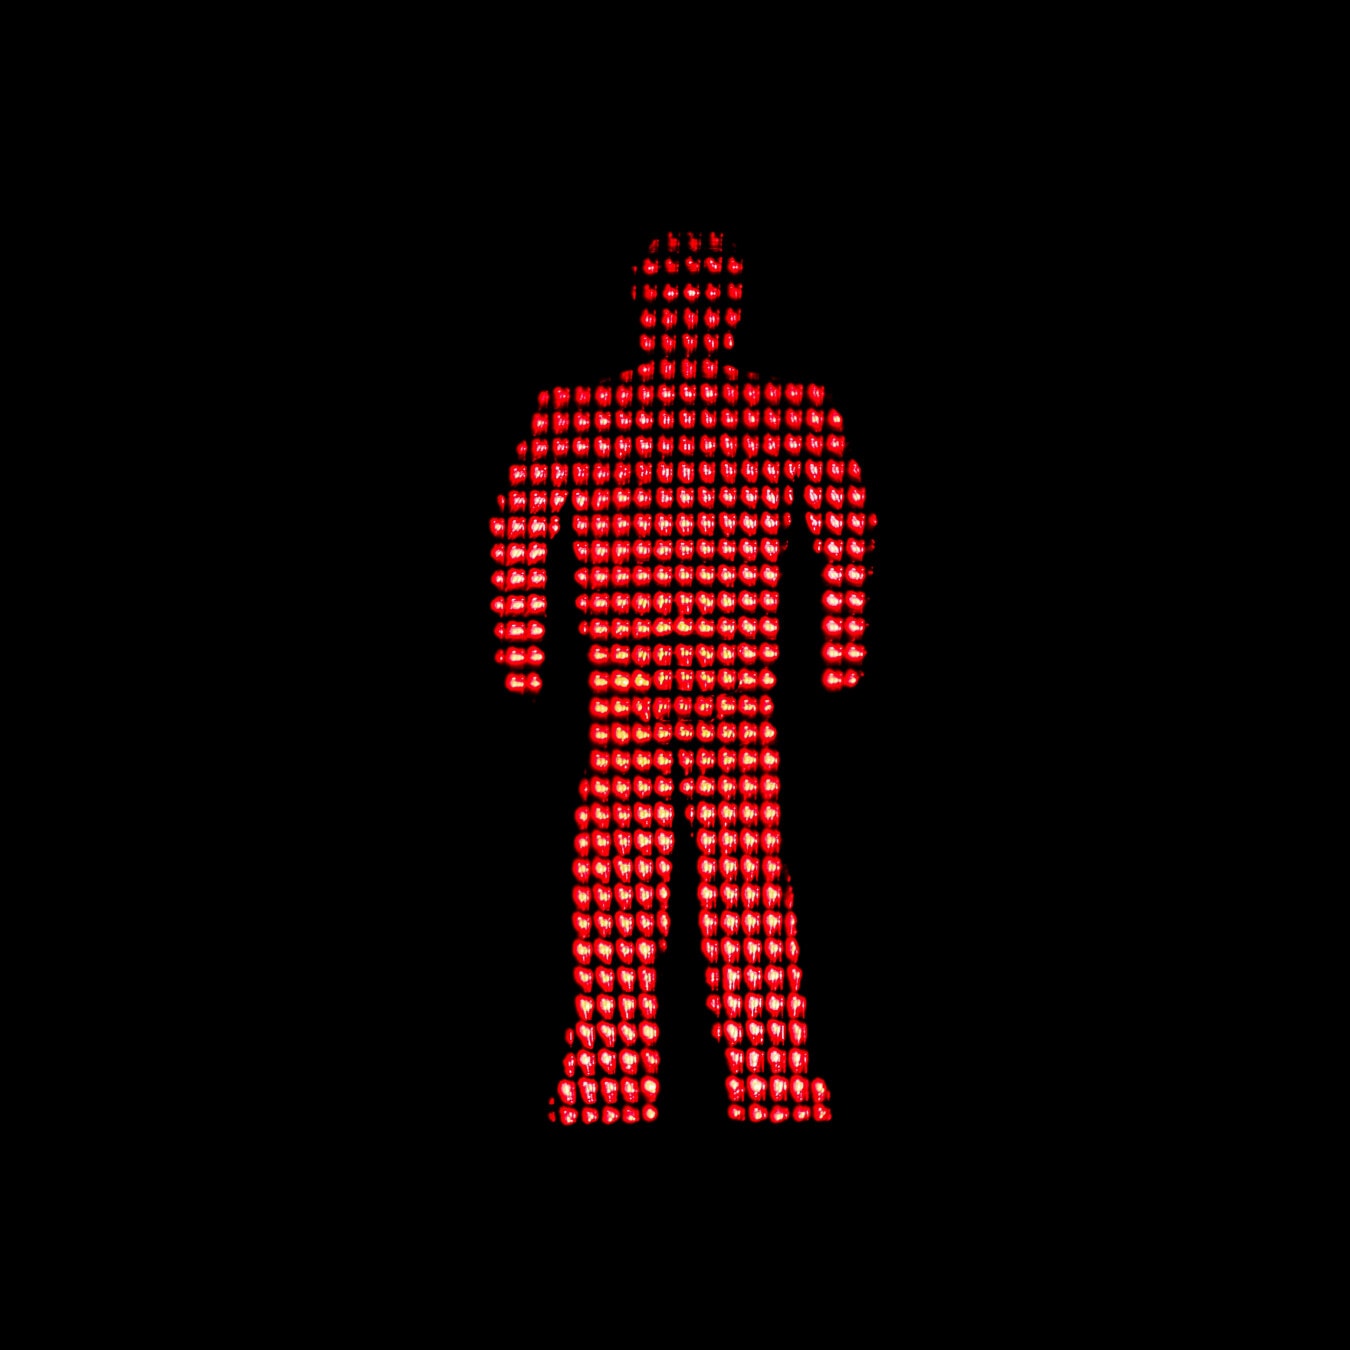 κόκκινο φως, σηματοφορέα (semaphore), Φανάρι, φως, κόκκινο, Έλεγχος κυκλοφορίας, προειδοποίηση, Σταμάτα, σύμβολο, κυκλοφορίας